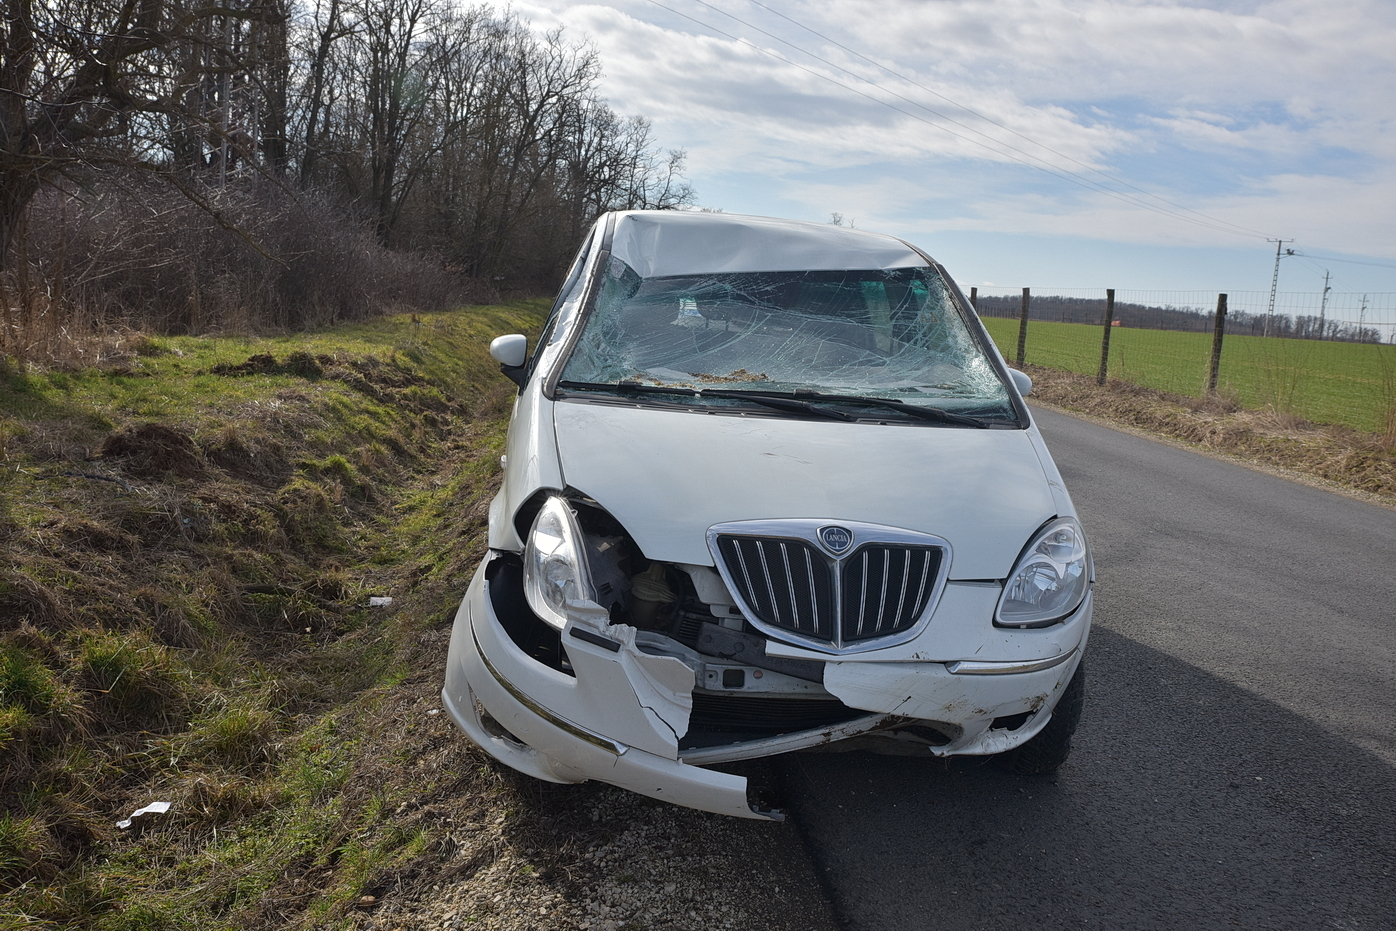 A sofőr használta a biztonsági övét és sérülés nélkül megúszta a balesetet